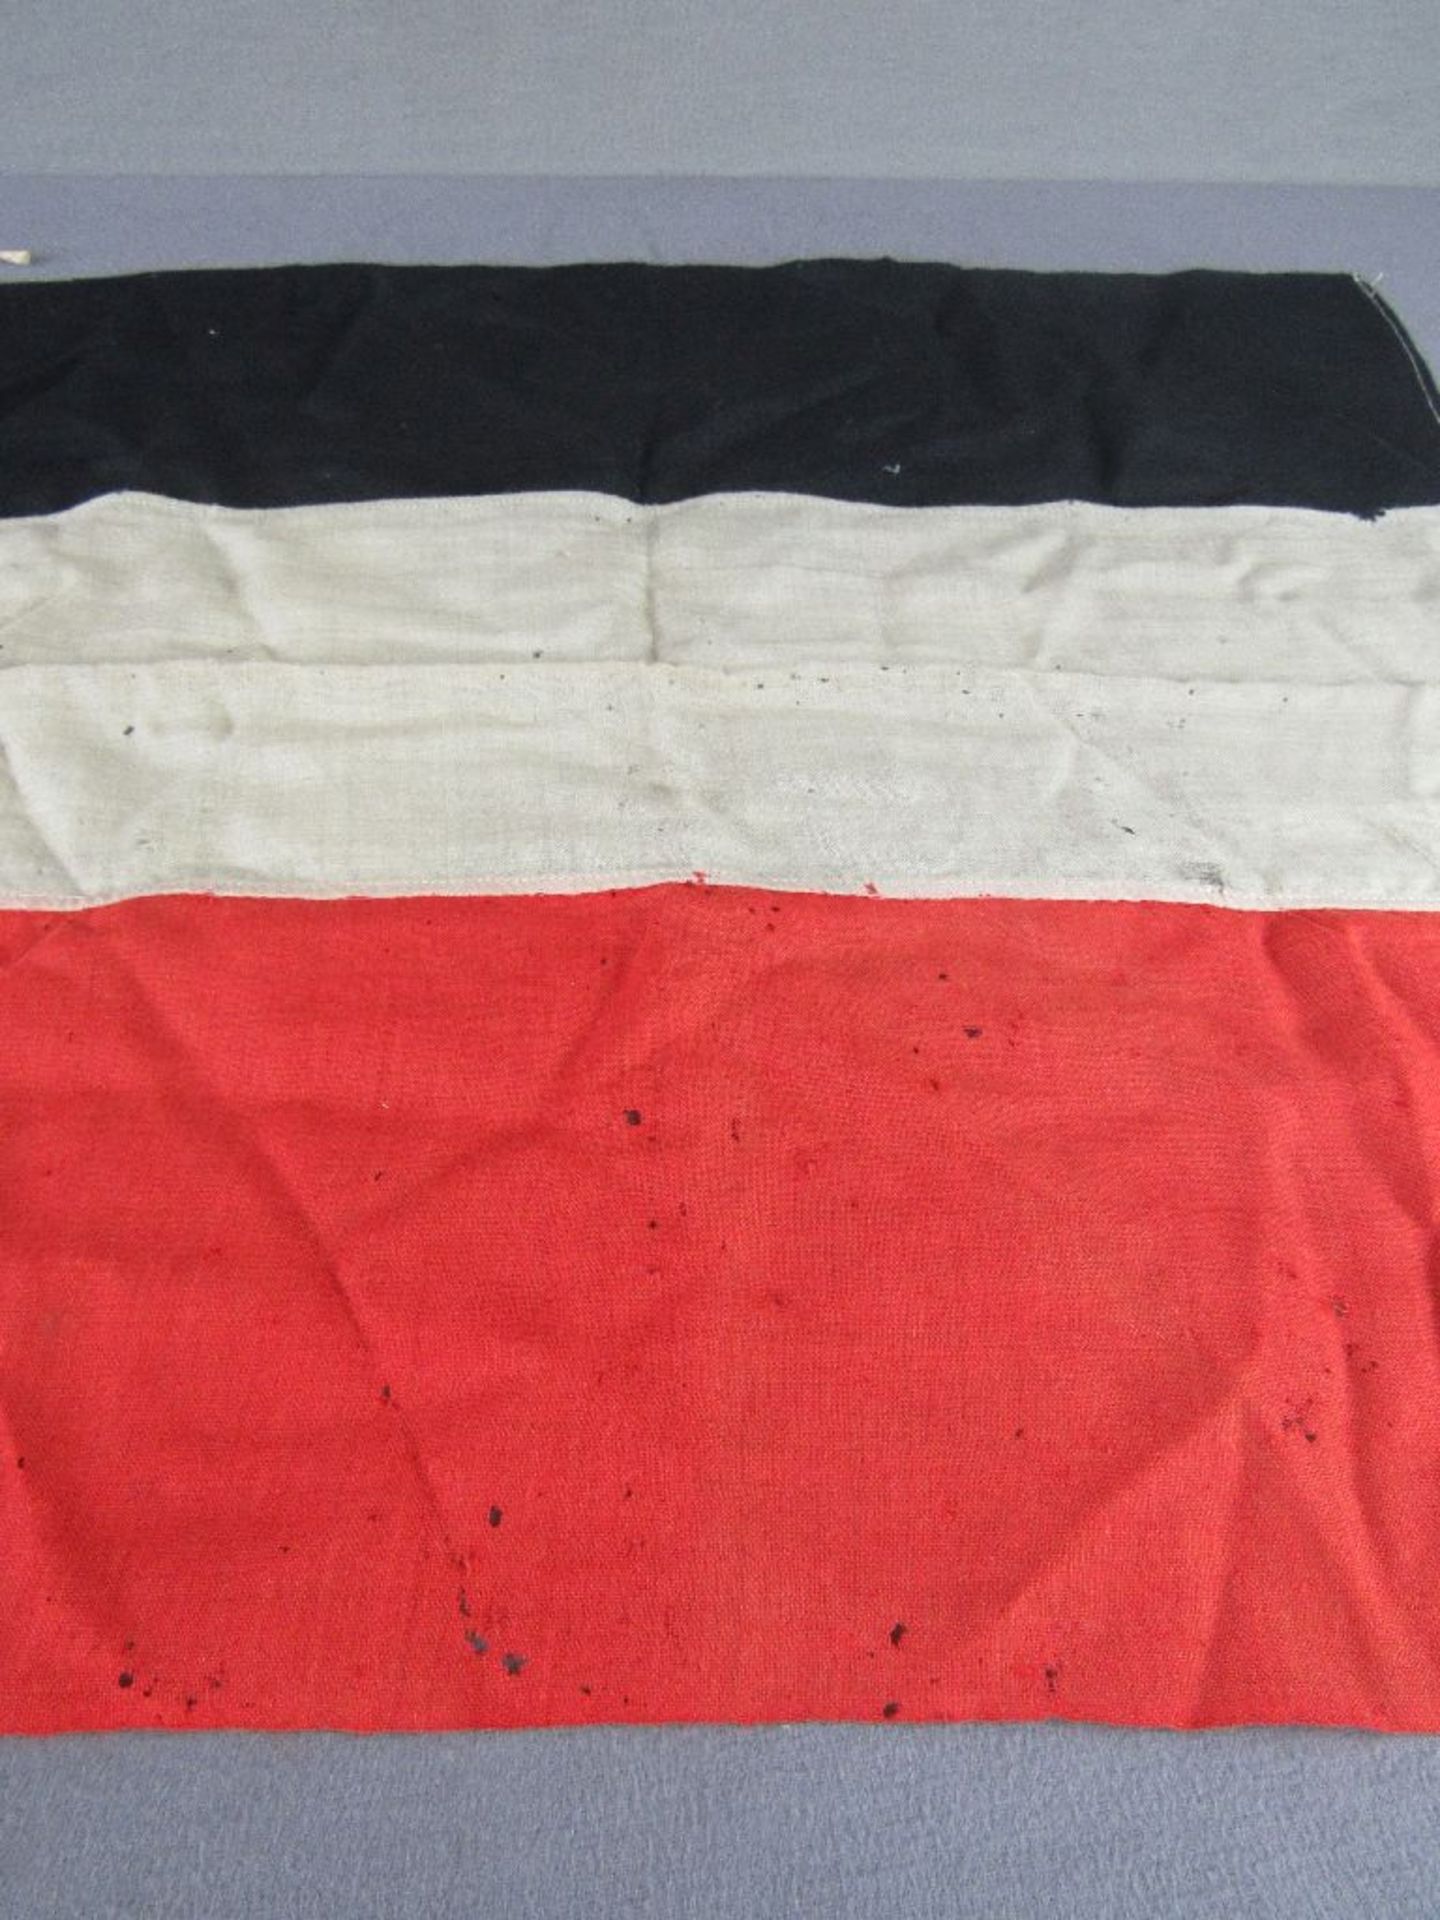 Fahne Deutsches Reich 1.Wk schwarz weiss rot originales Stück um 1910 58x65cm - Image 5 of 5